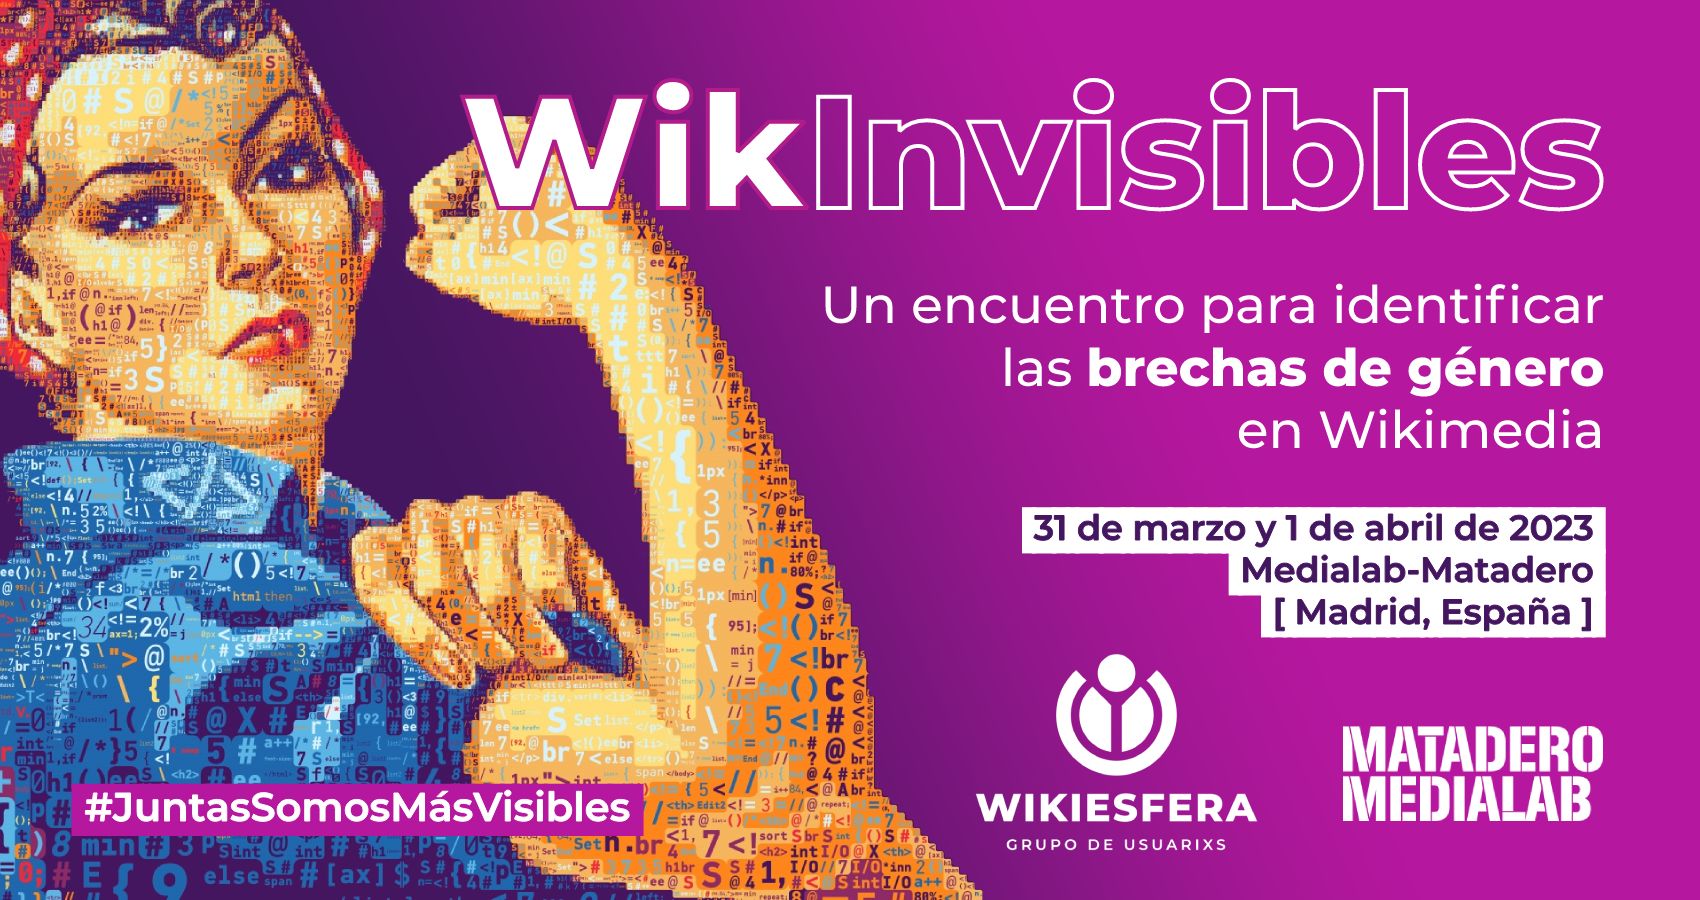 WikInvisibles un encuentro para identificar las brechas de género en Wikimedia